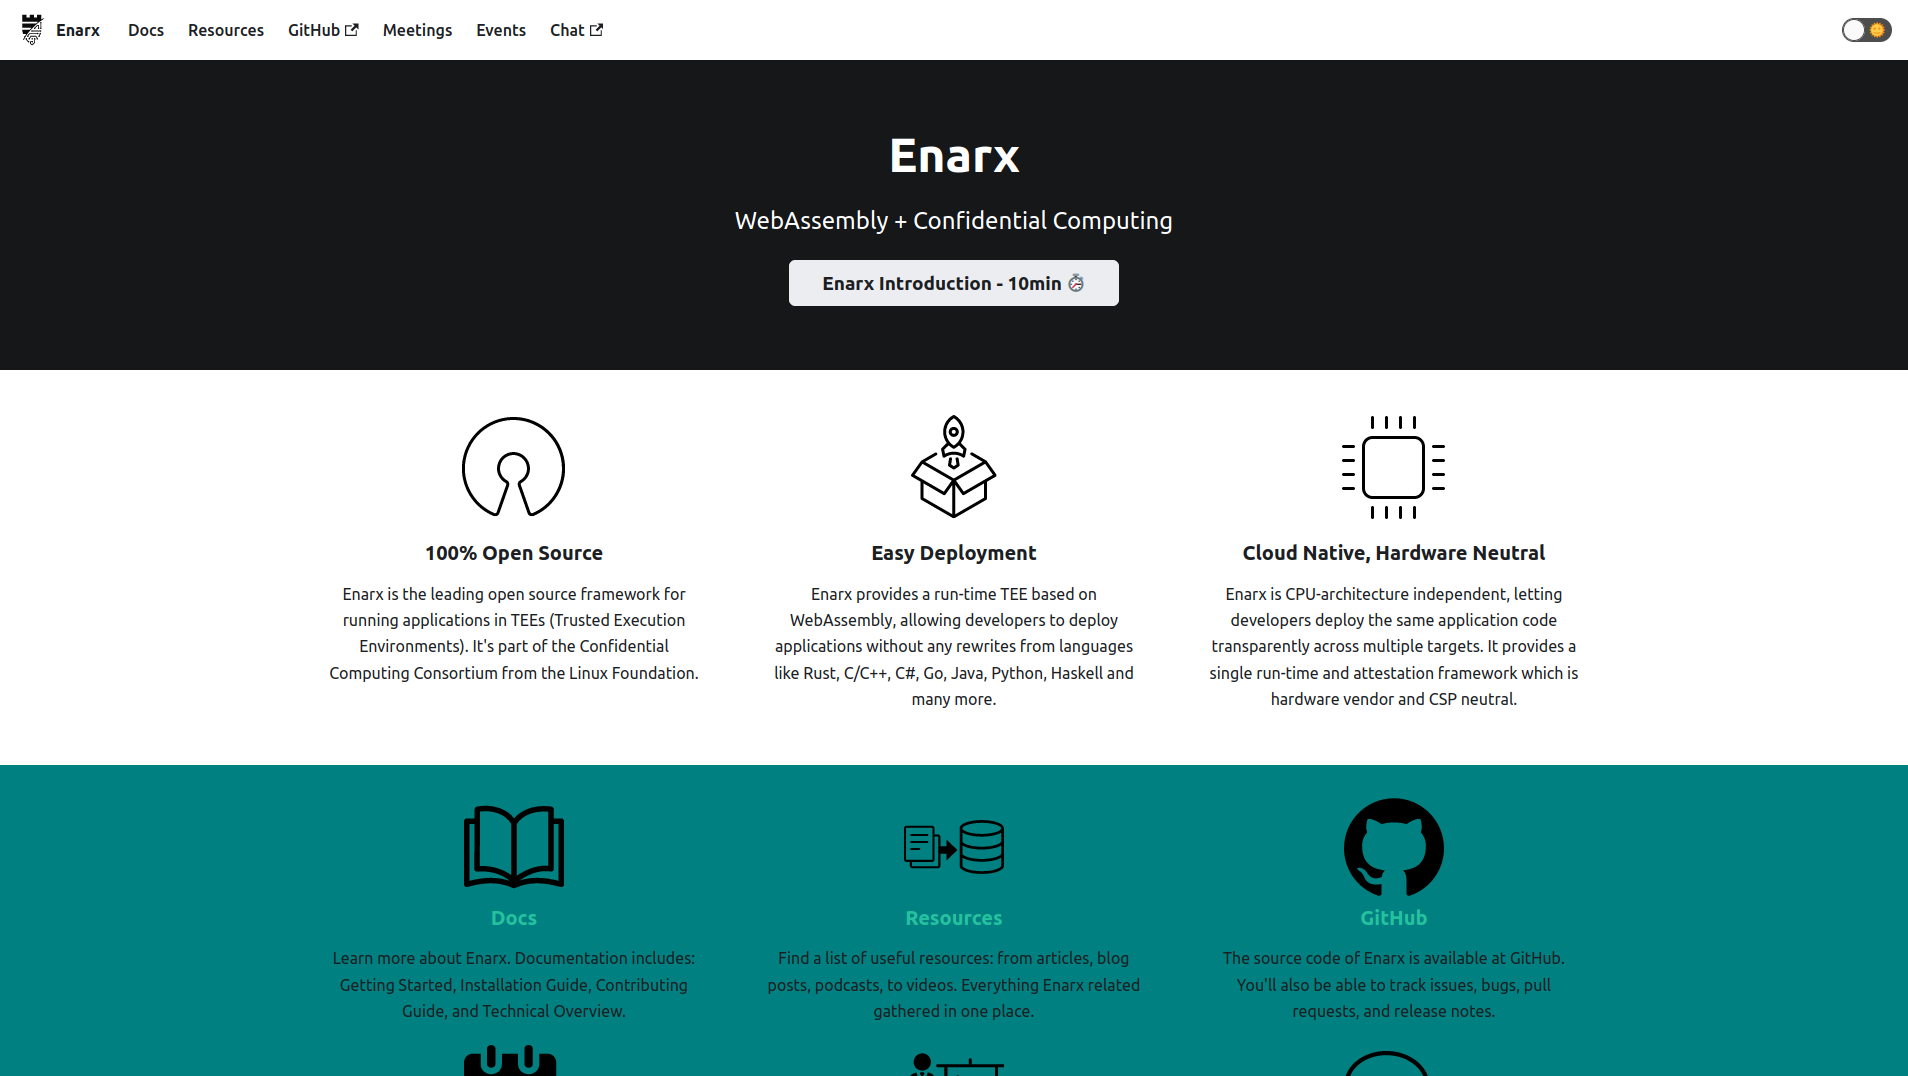 Enarx's Website